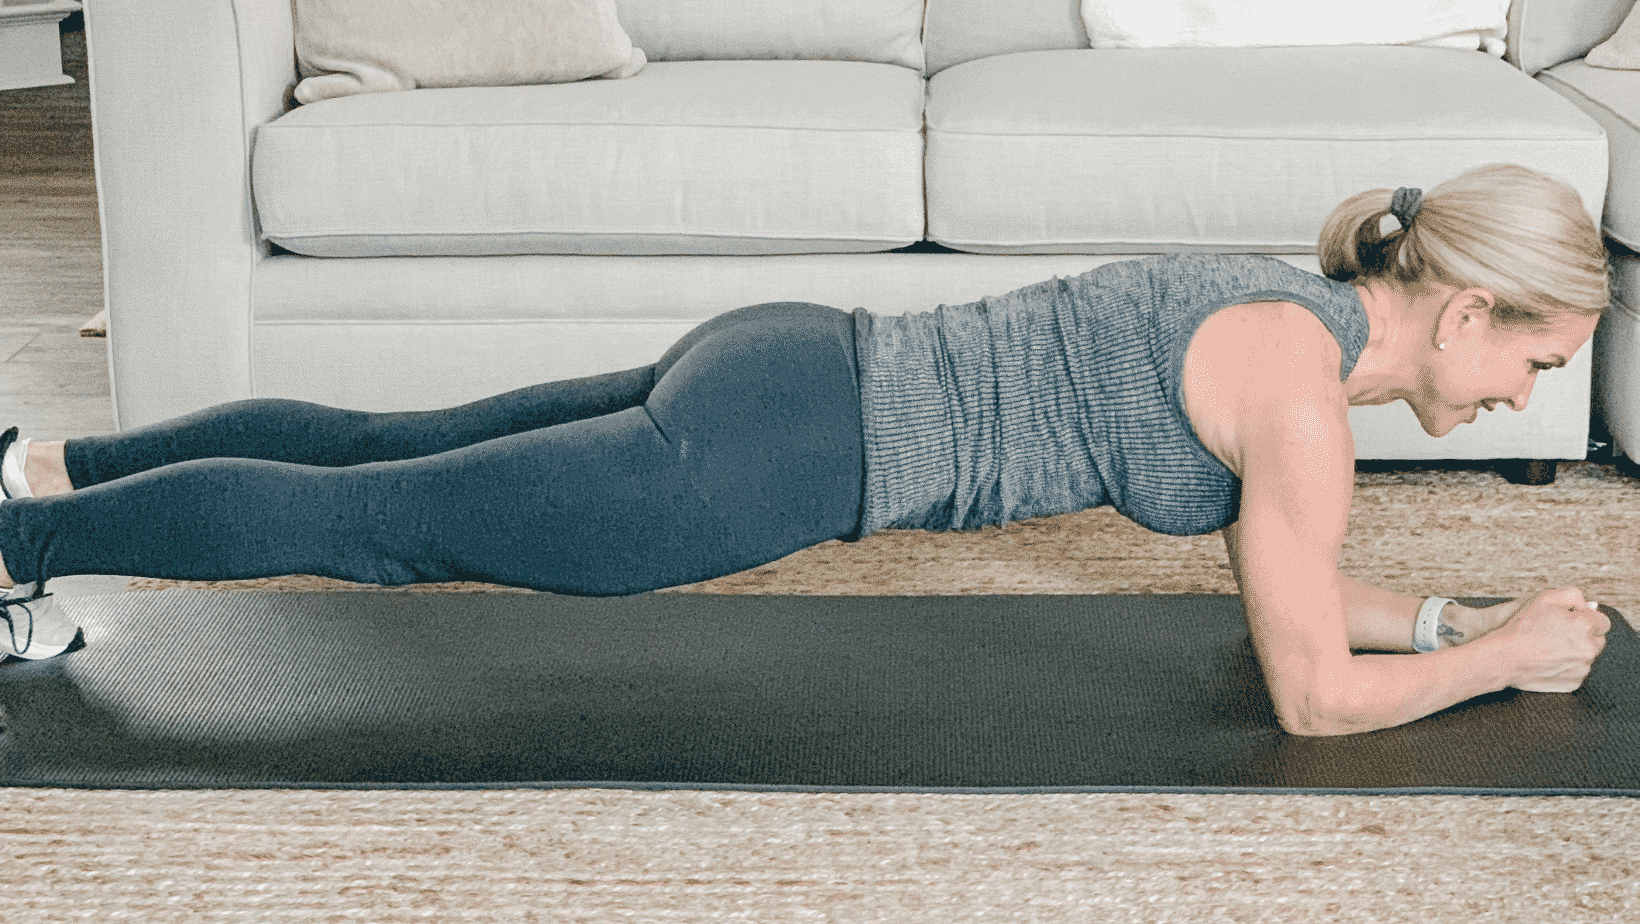 Chris Freytag demonstrating core exercises for seniors – forearm plank